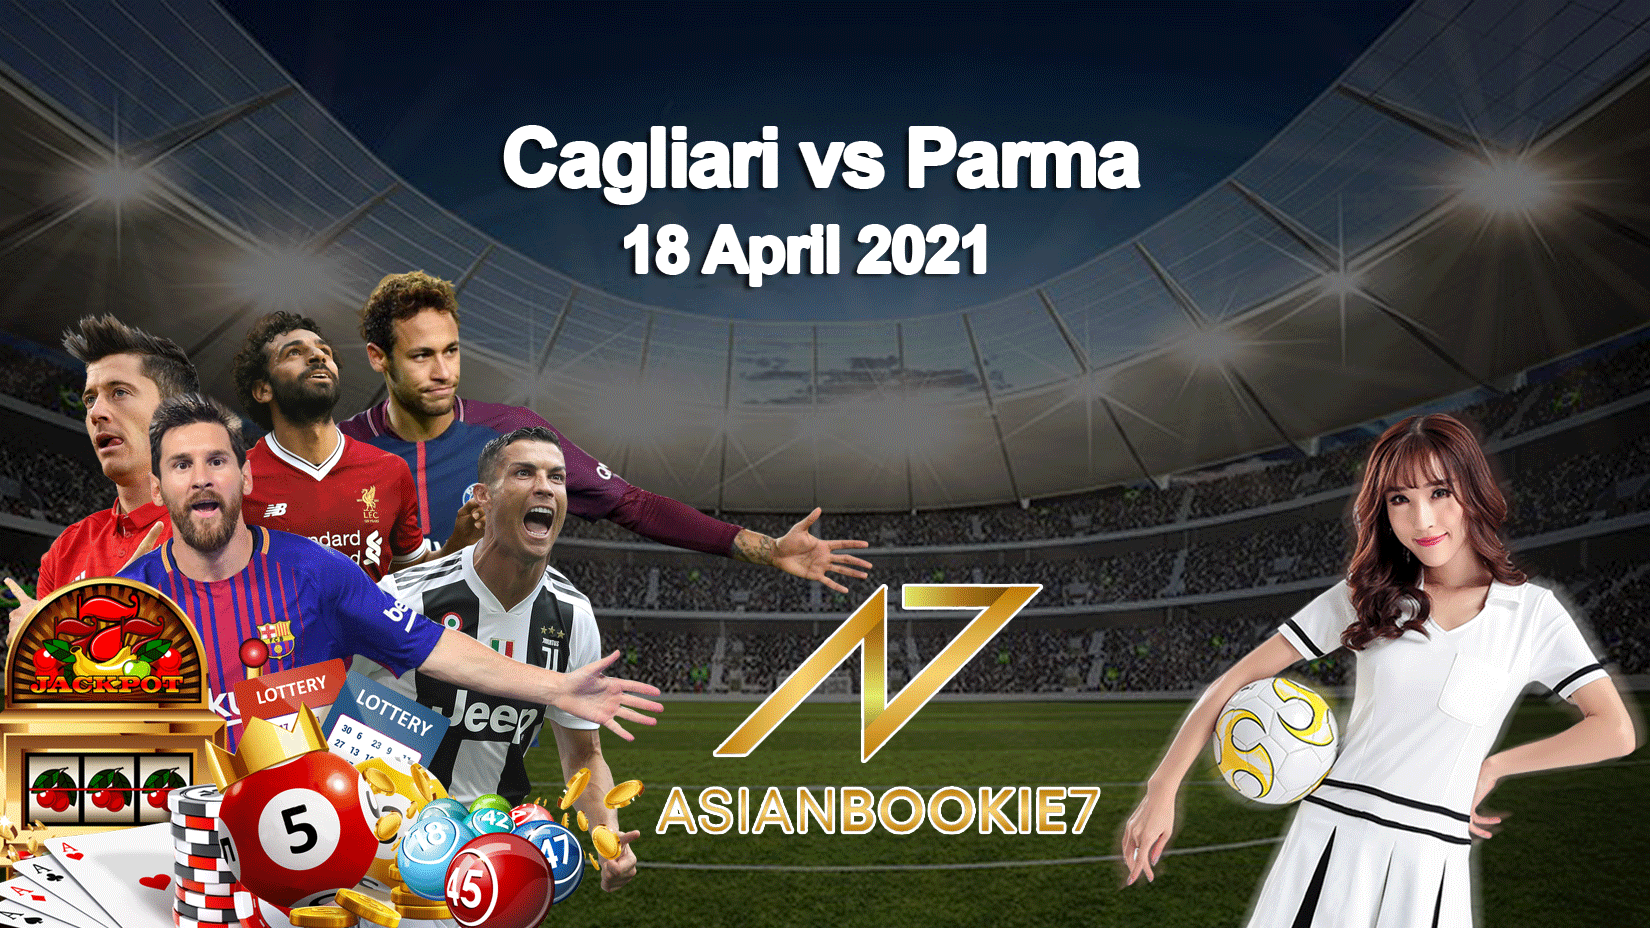 Prediksi-Cagliari-vs-Parma-18-April-2021